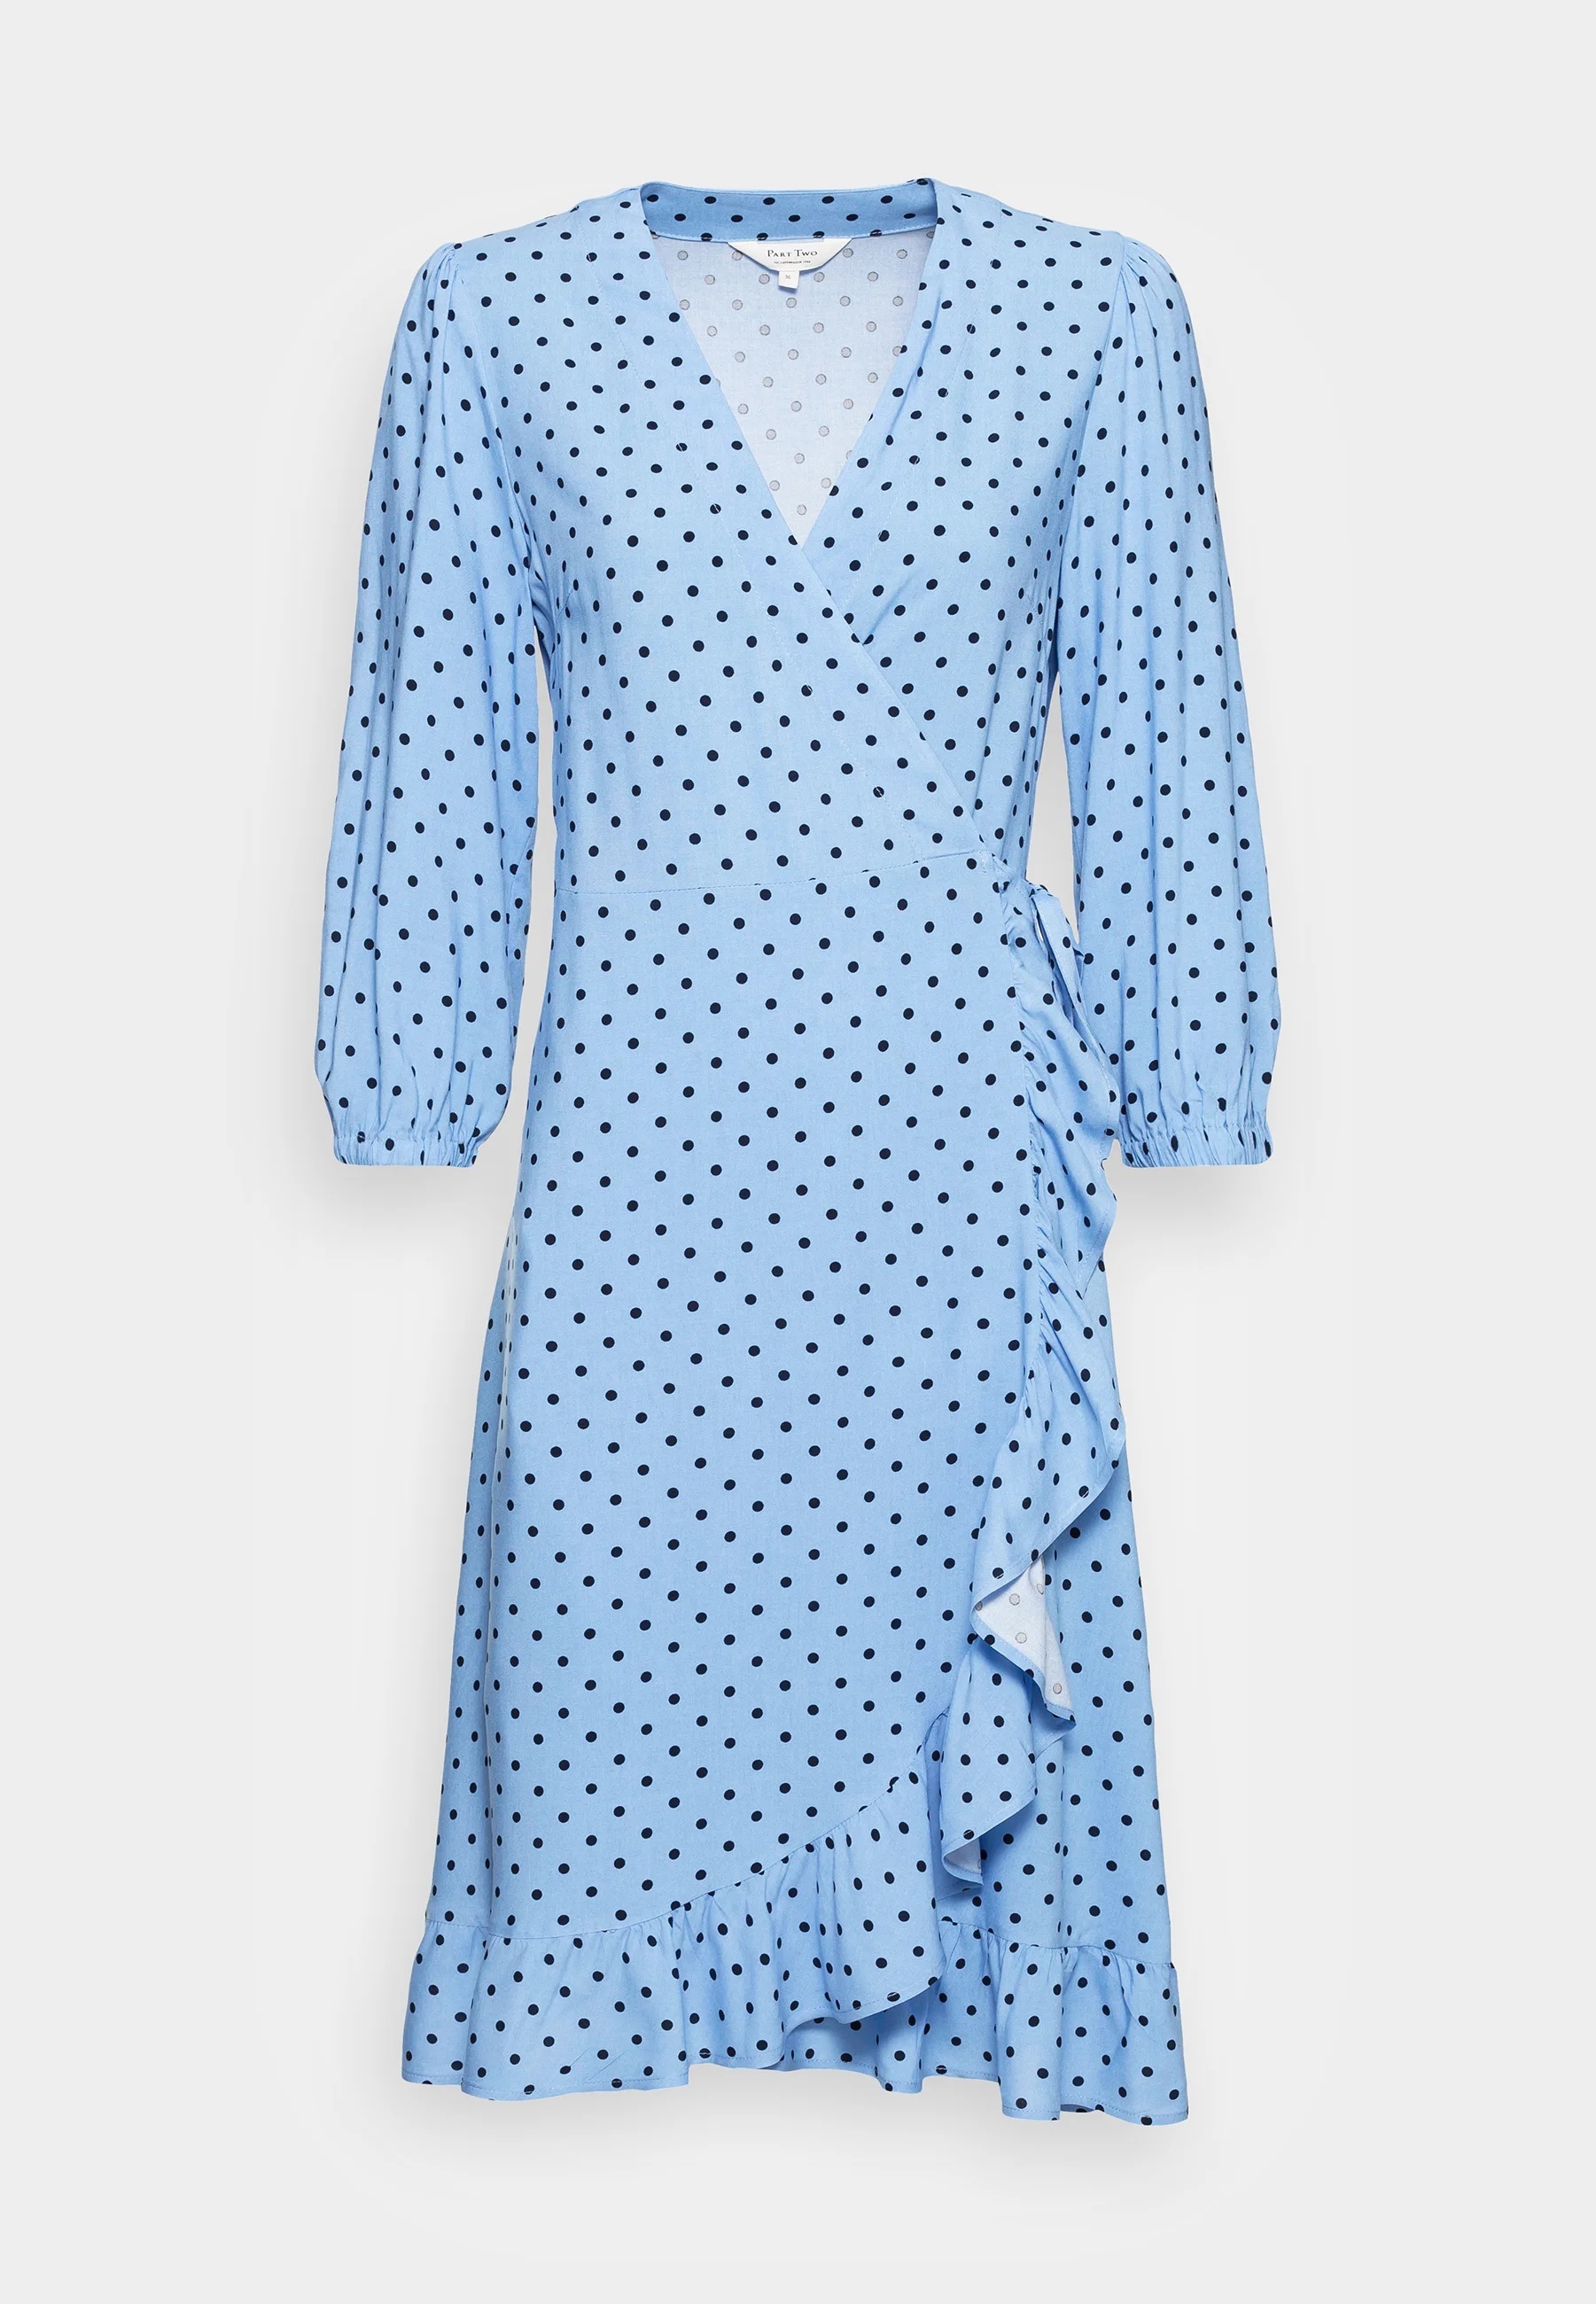 Vestido azul de lunares. Claires, de venta en Zalando (99,95 euros).